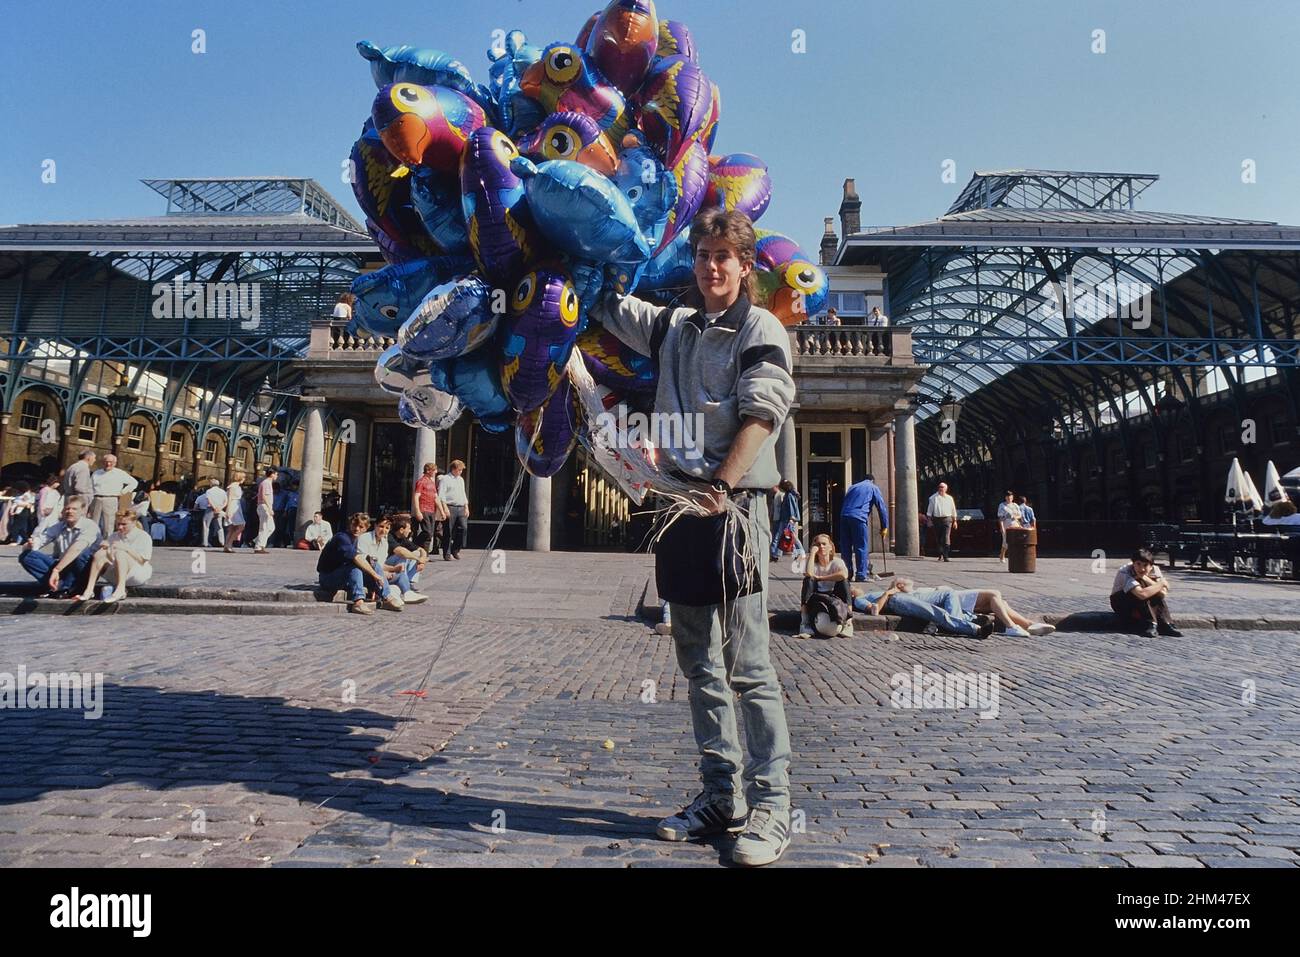 Balloon seller, Covent Garden, London, England, UK. Circa 1980's Stock Photo